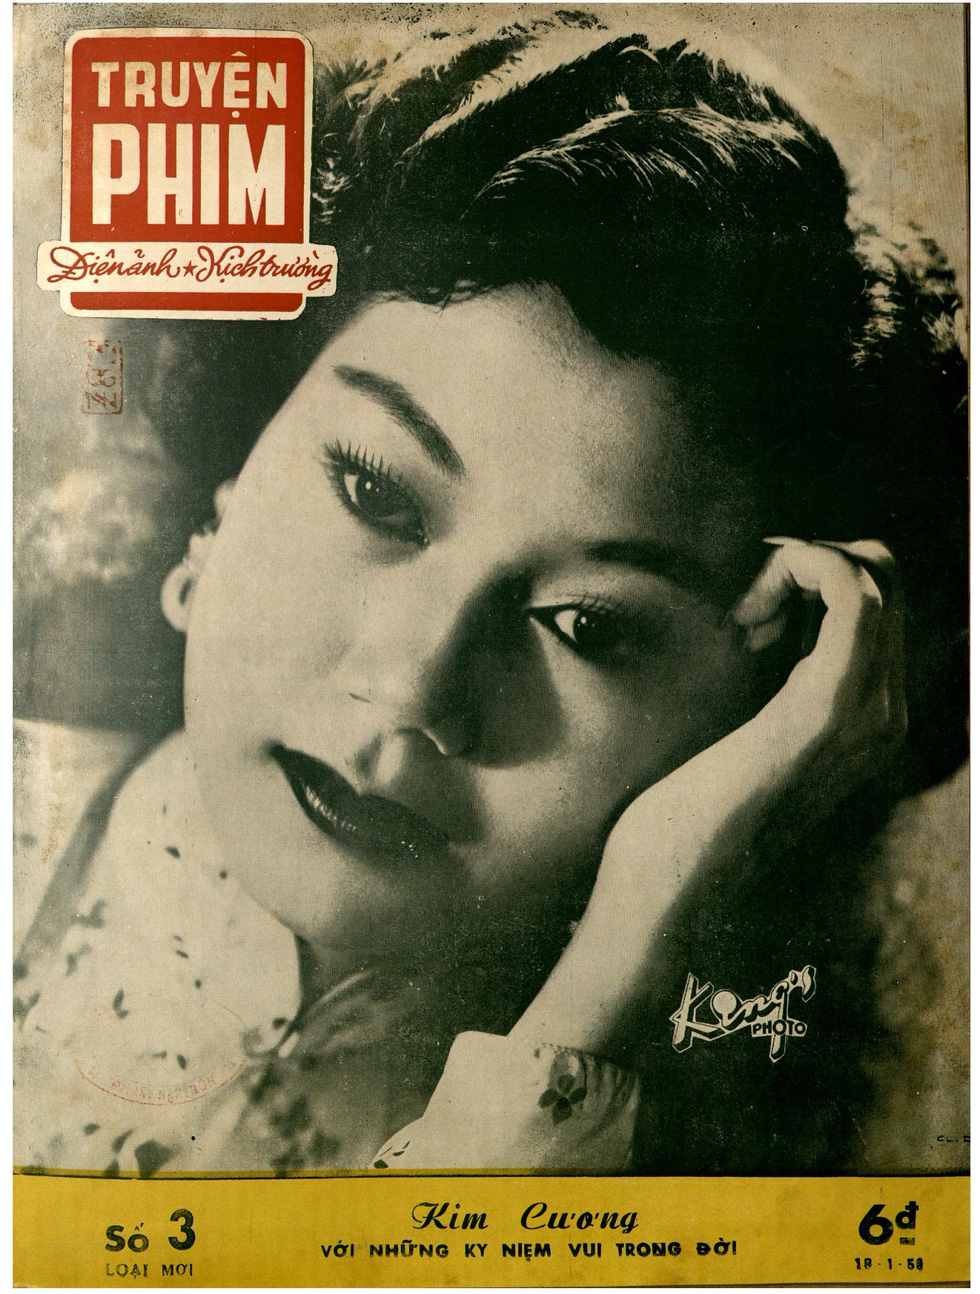 Kim Cương sớm được phong tặng danh hiệu kỳ nữ.